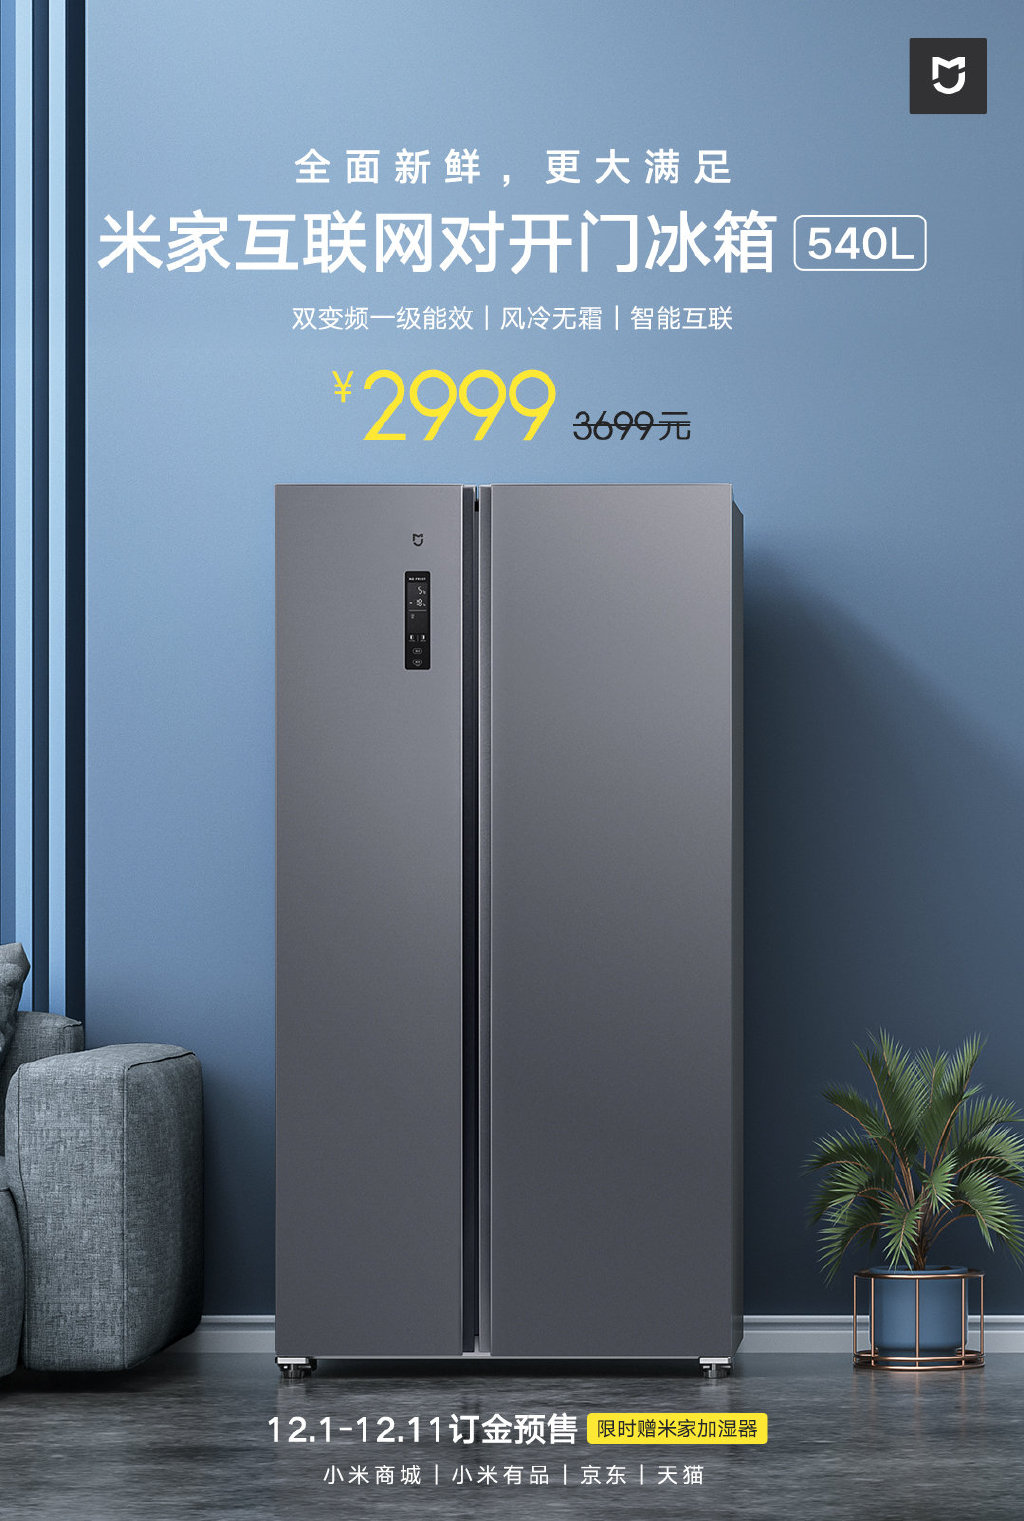 米家互联网对开门冰箱上线 540L大容量